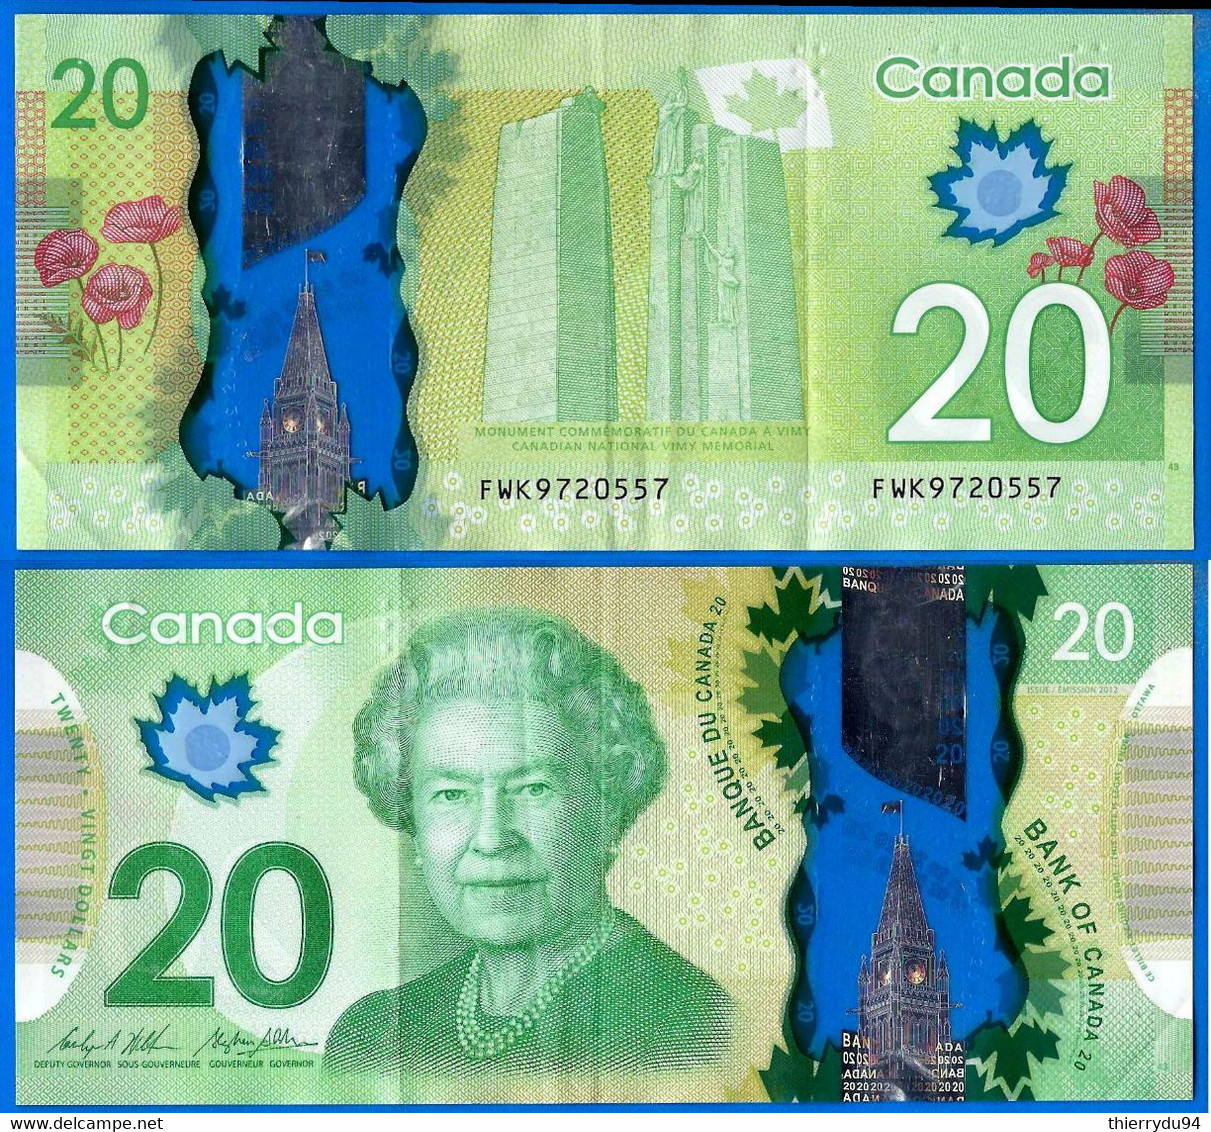 Canada 20 Dollars 2012 Prfix FWK Polymere Billet Reine Elisabeth Fleur Monument Paypal Bitcoin OK! - Kanada